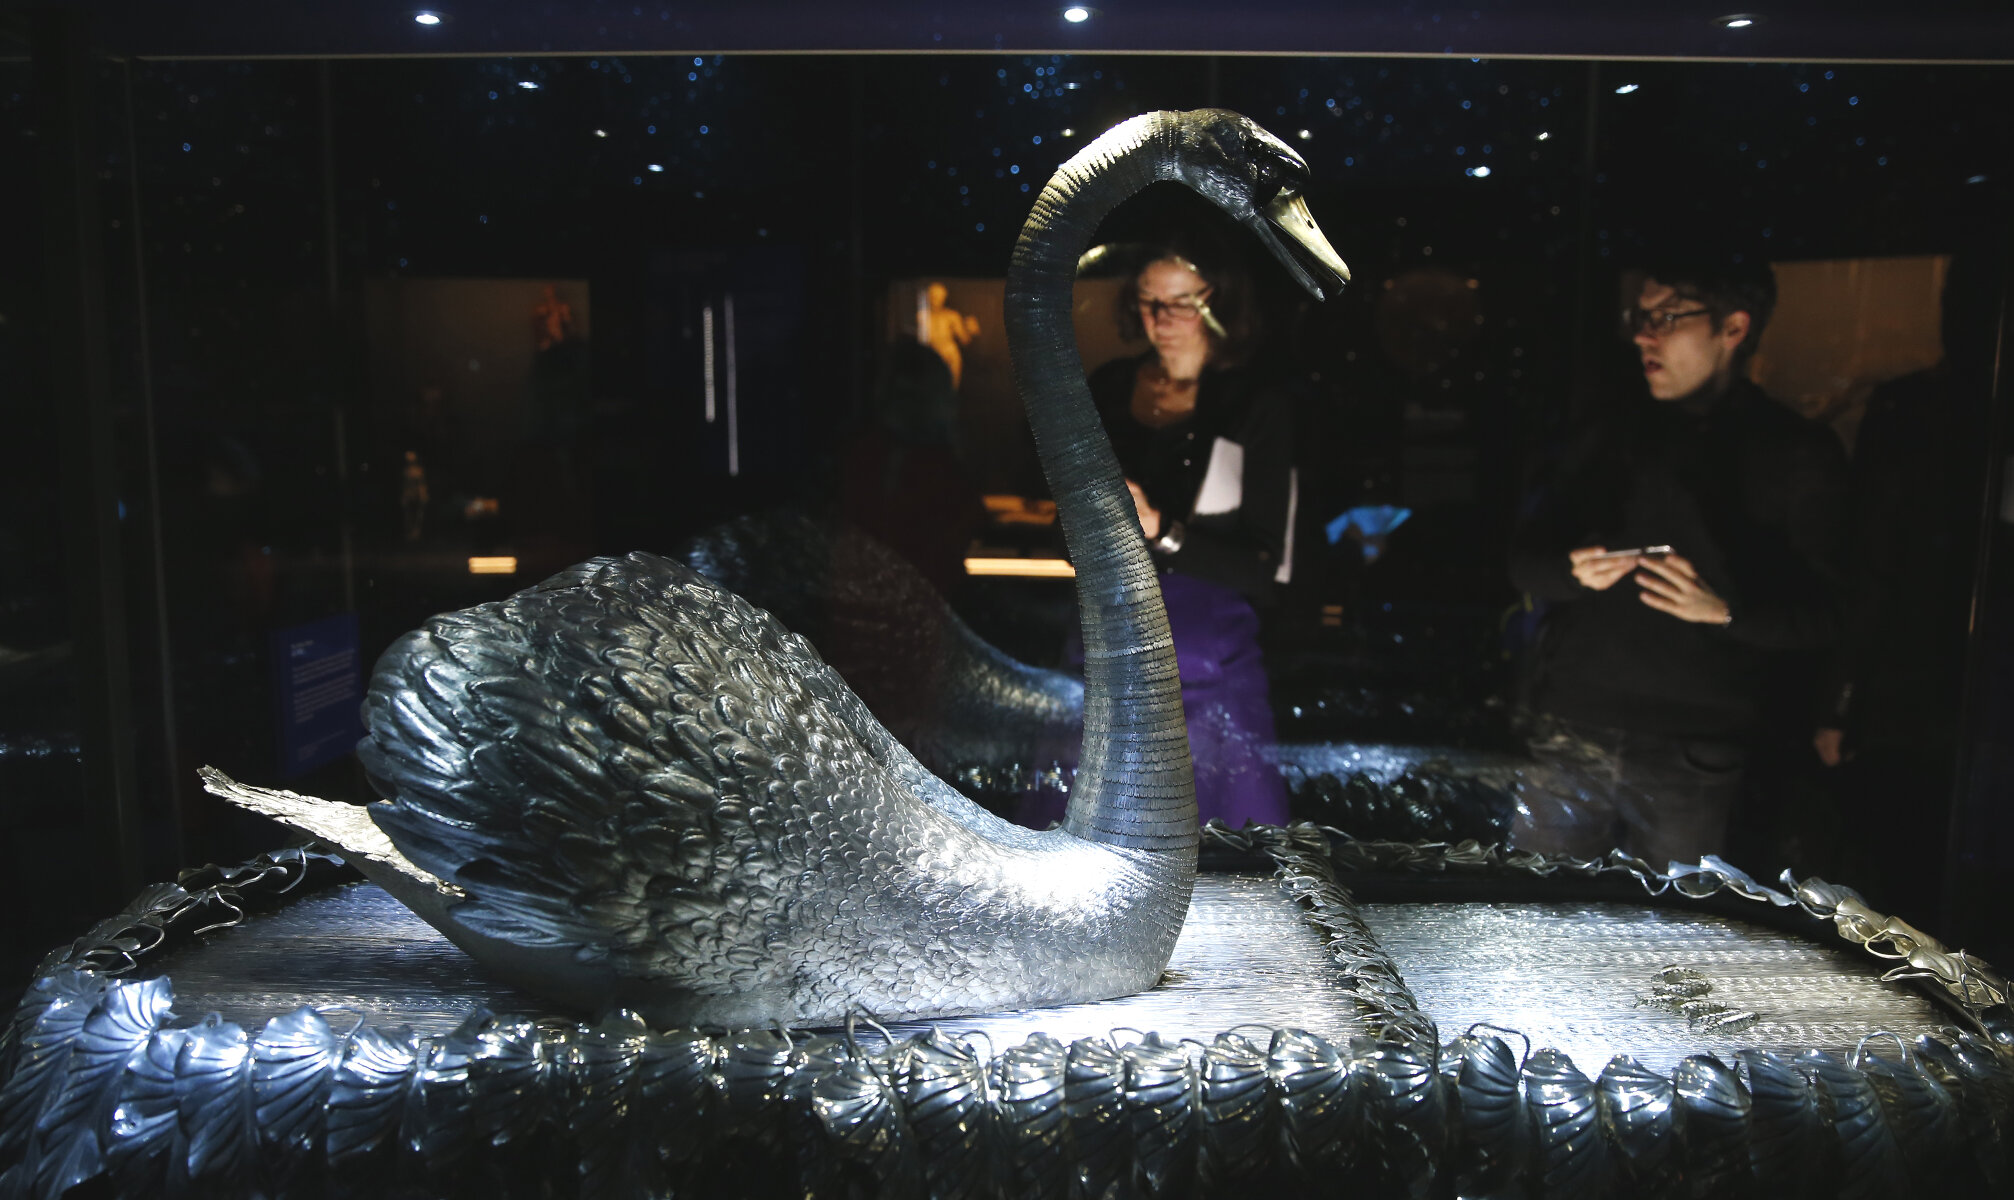 <p>Механический серебряный лебедь, изобретенный бельгийским инженером Джоном-Джозефом Мерлином к Всемирной выставке 1867 года в Париже. Птица стоит на стеклянной подставке в виде водной глади, по которой &laquo;плывут&raquo; шесть рыб. Лебедь управляется тремя часовыми механизмами. Марк Твен, увидевший экспонат на выставке, описал его в рассказе &laquo;Простаки за границей&raquo;.</p>